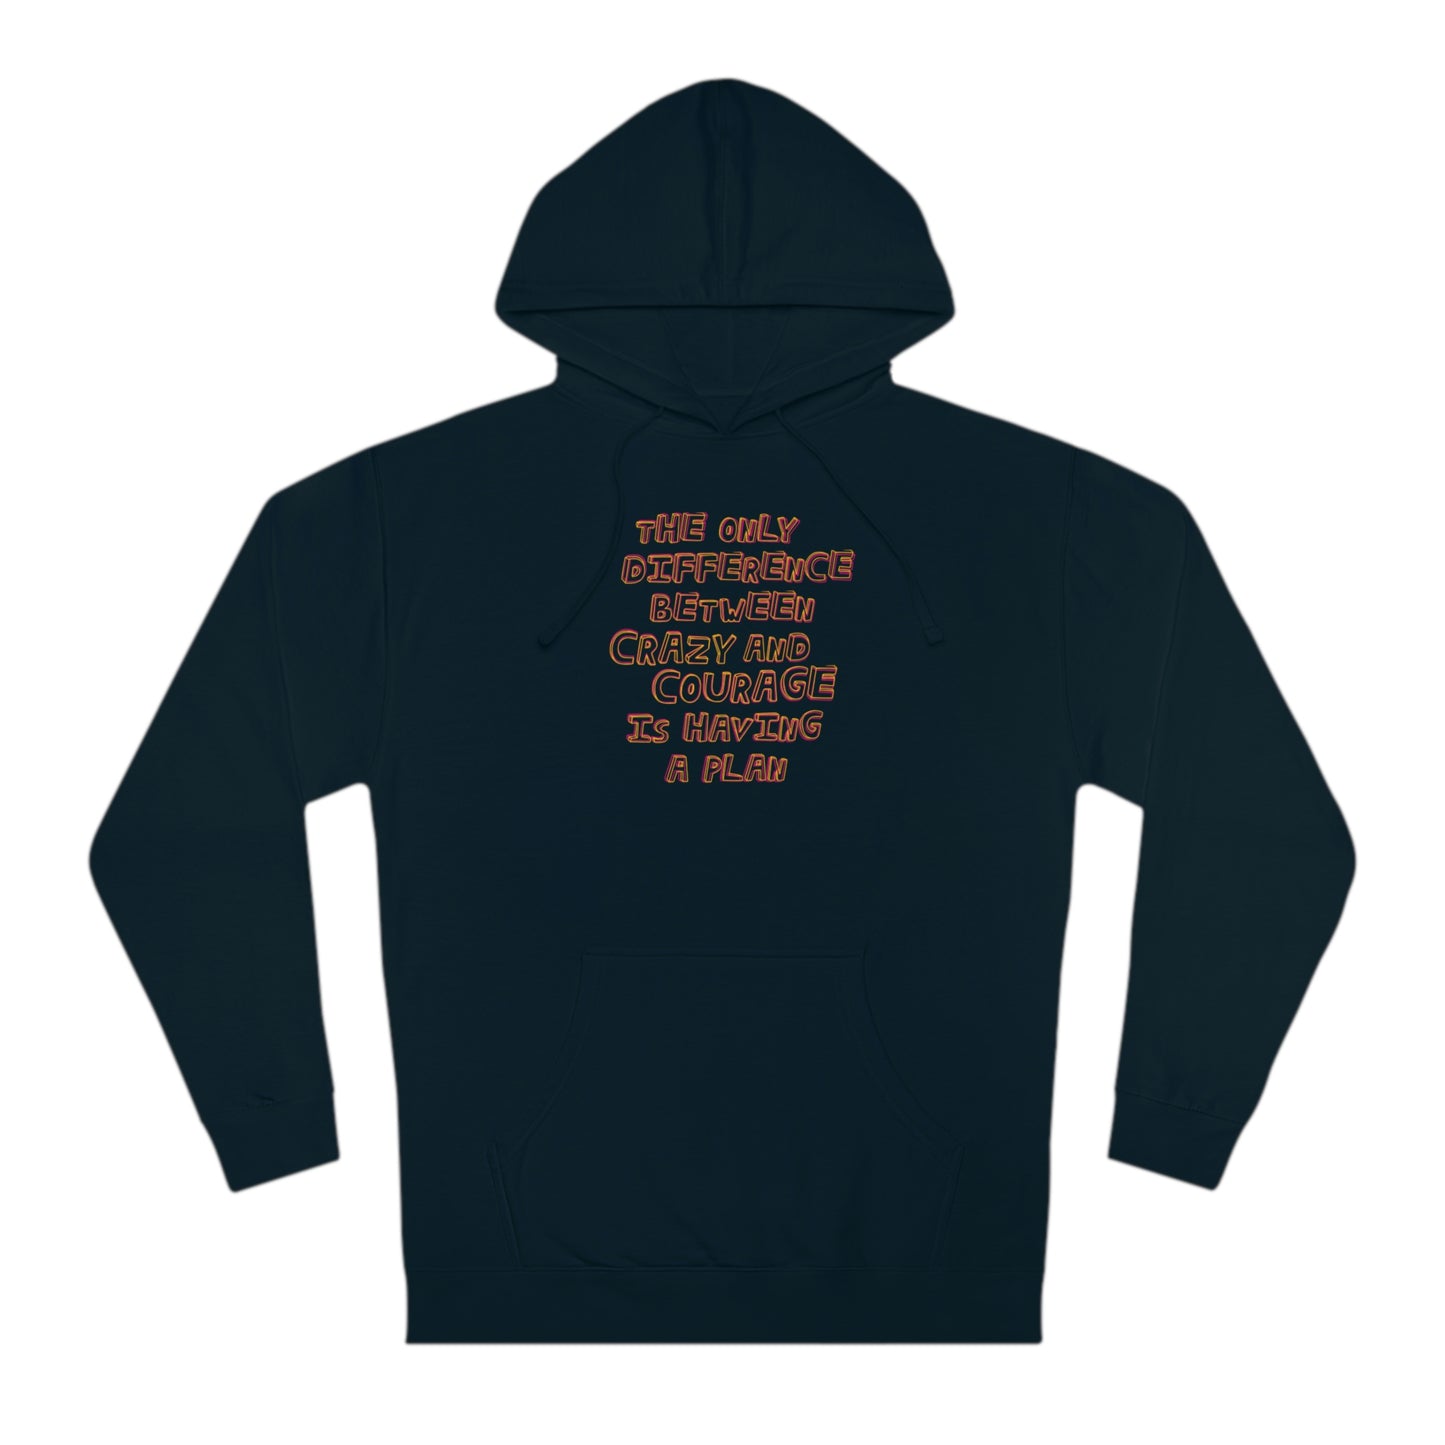 CRAZY AND COURAGE-Unisex Hooded Sweatshirt